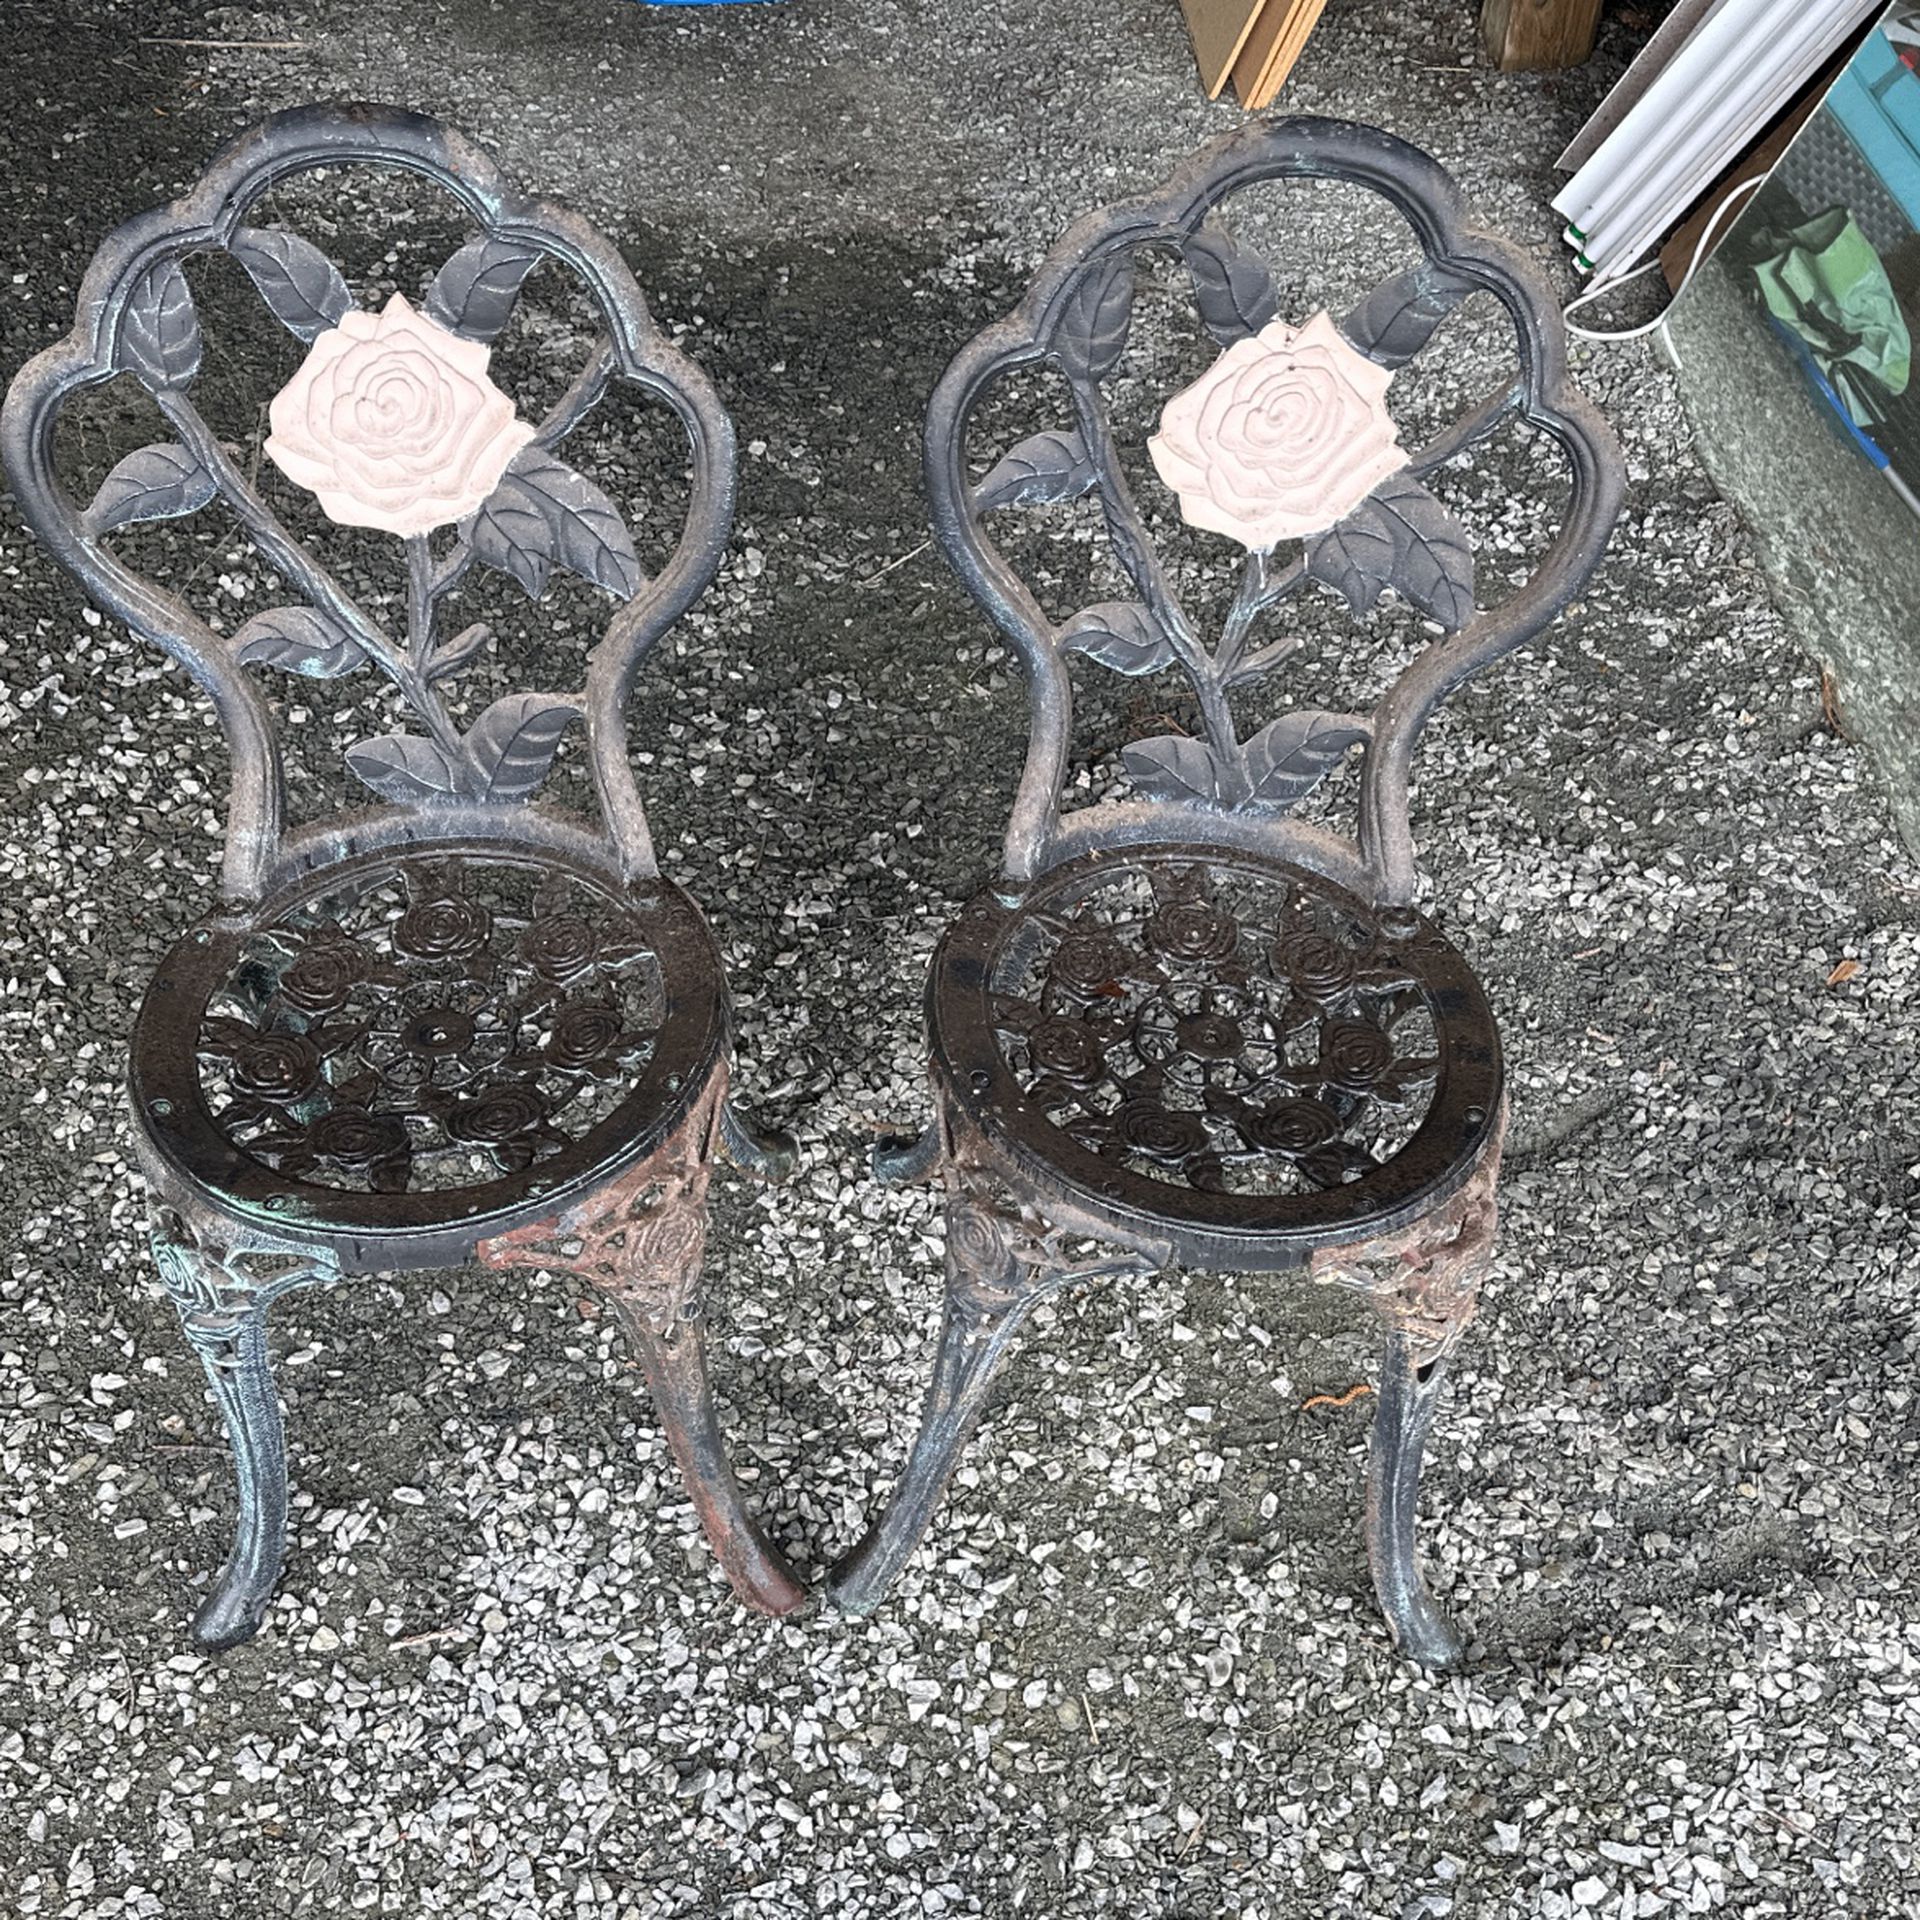 Antique Garden Chairs